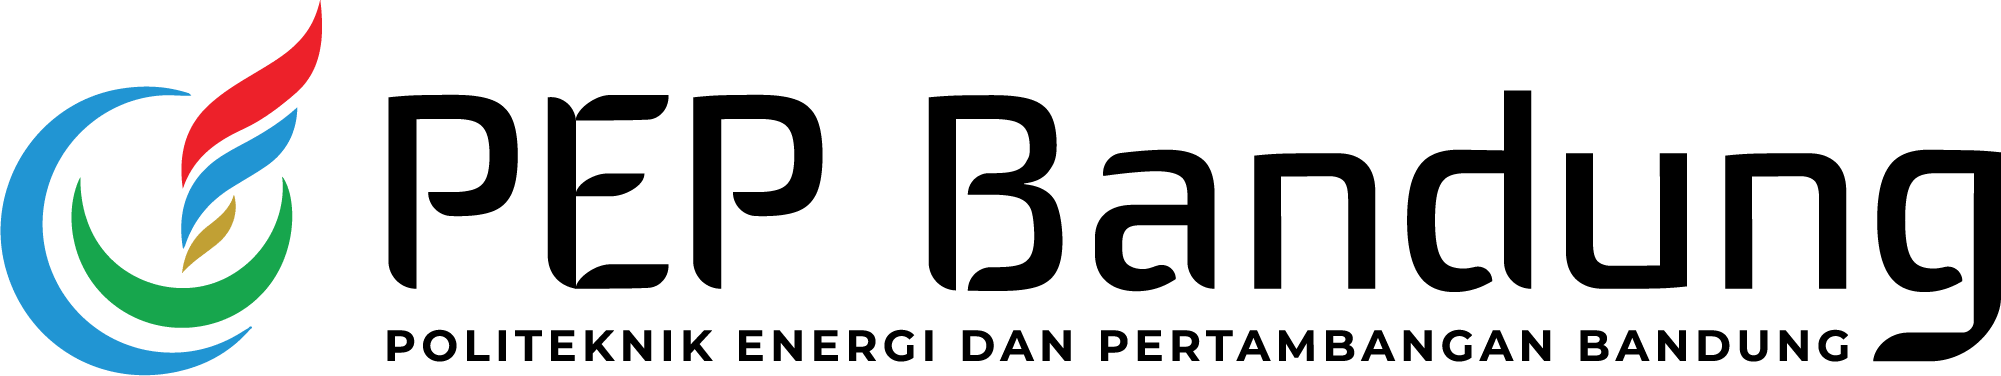 logo Politeknik Energi dan Pertambangan Bandung